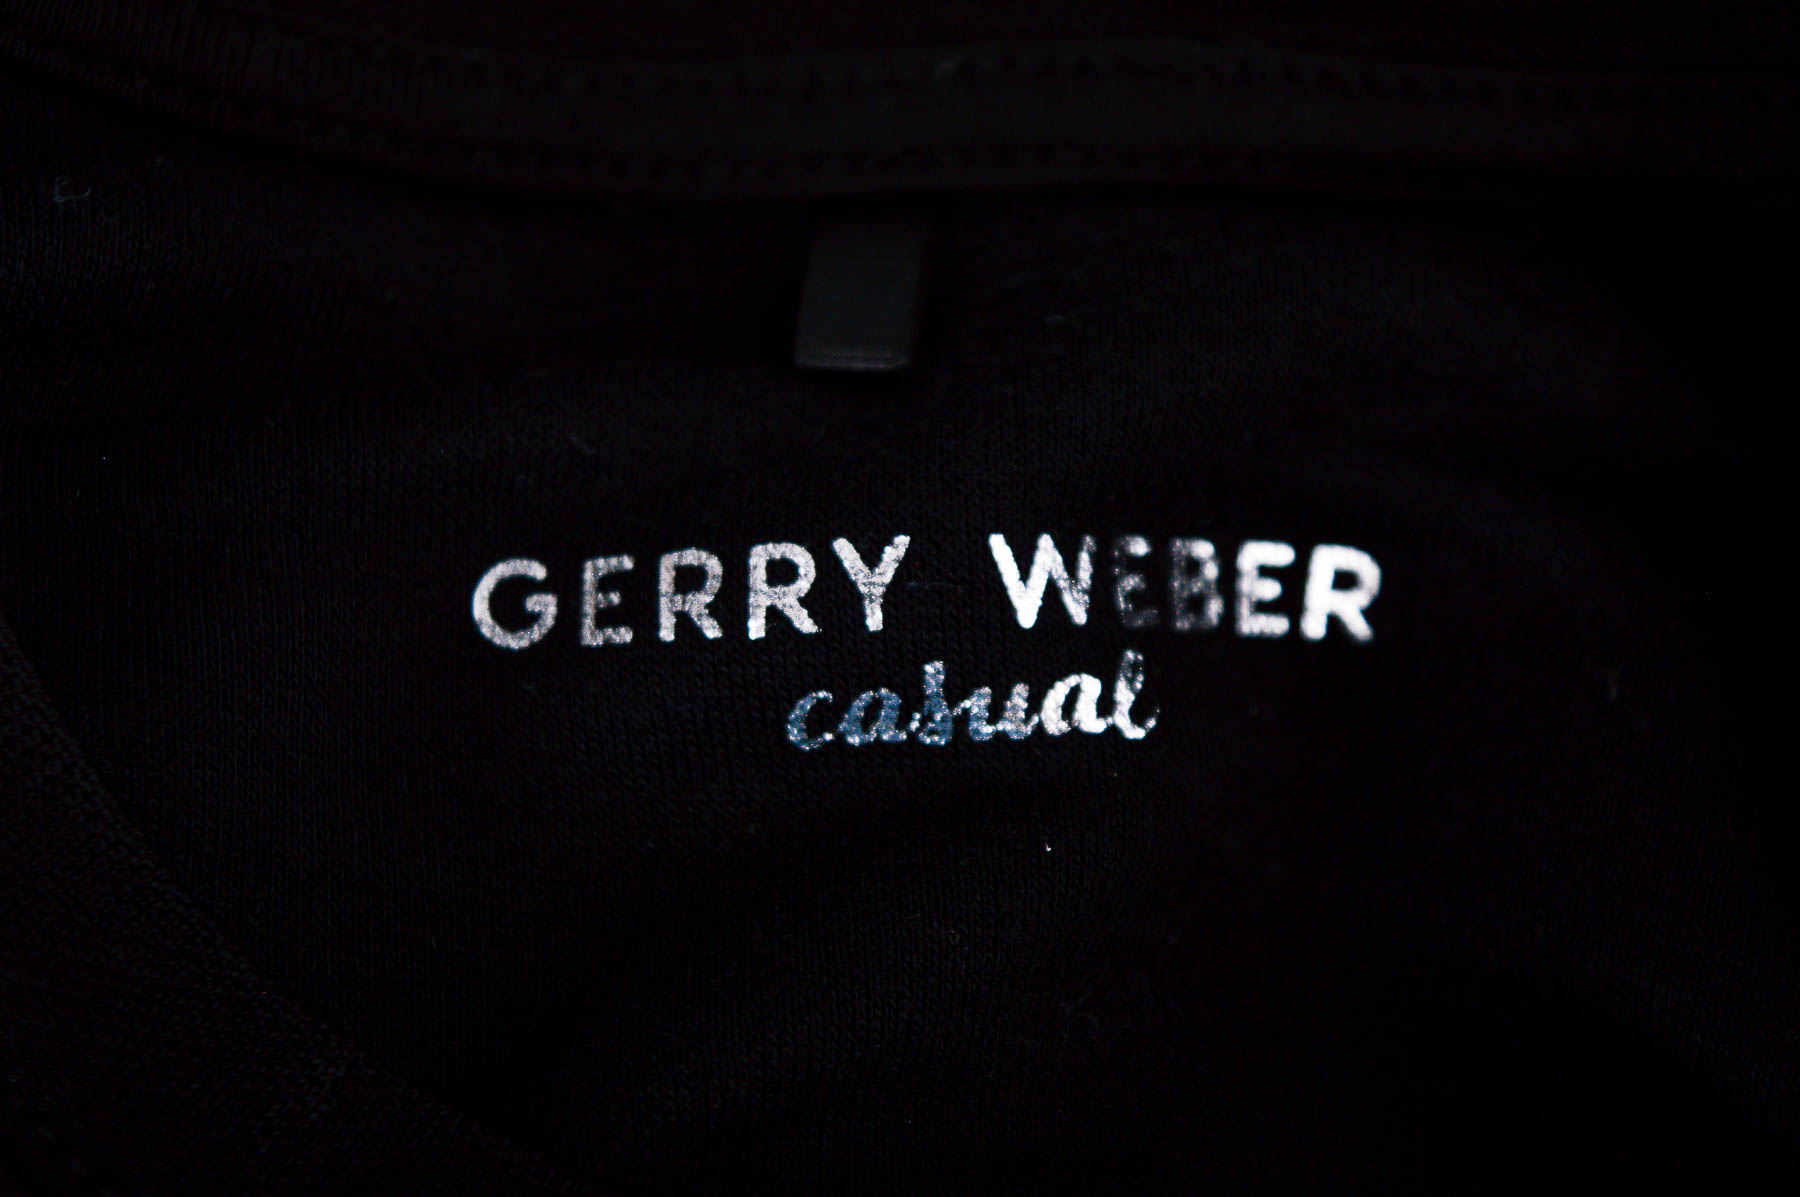 Women's blouse - GERRY WEBER - 2